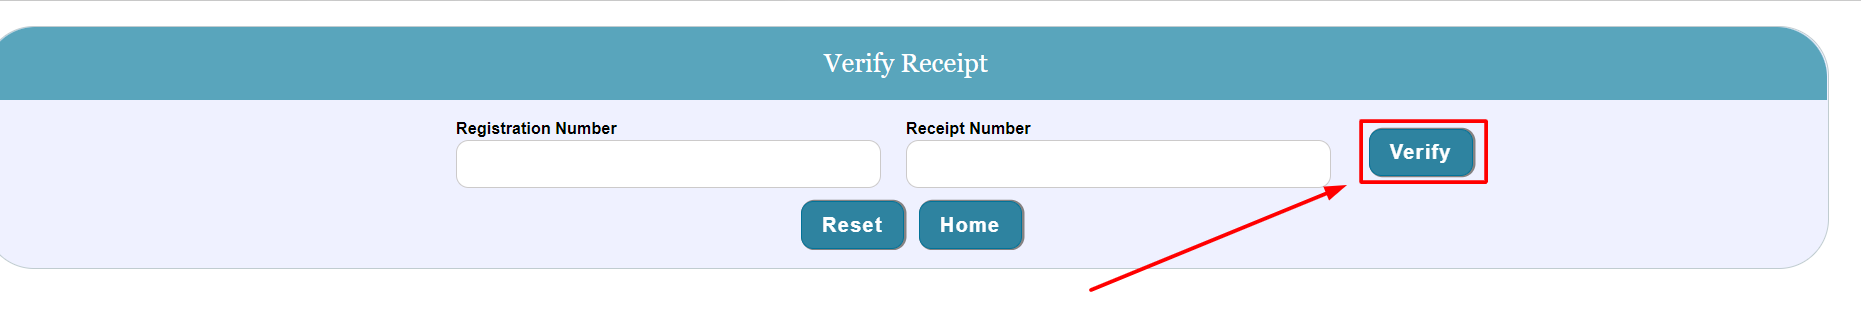 jharkhand road tax verify receipt online process